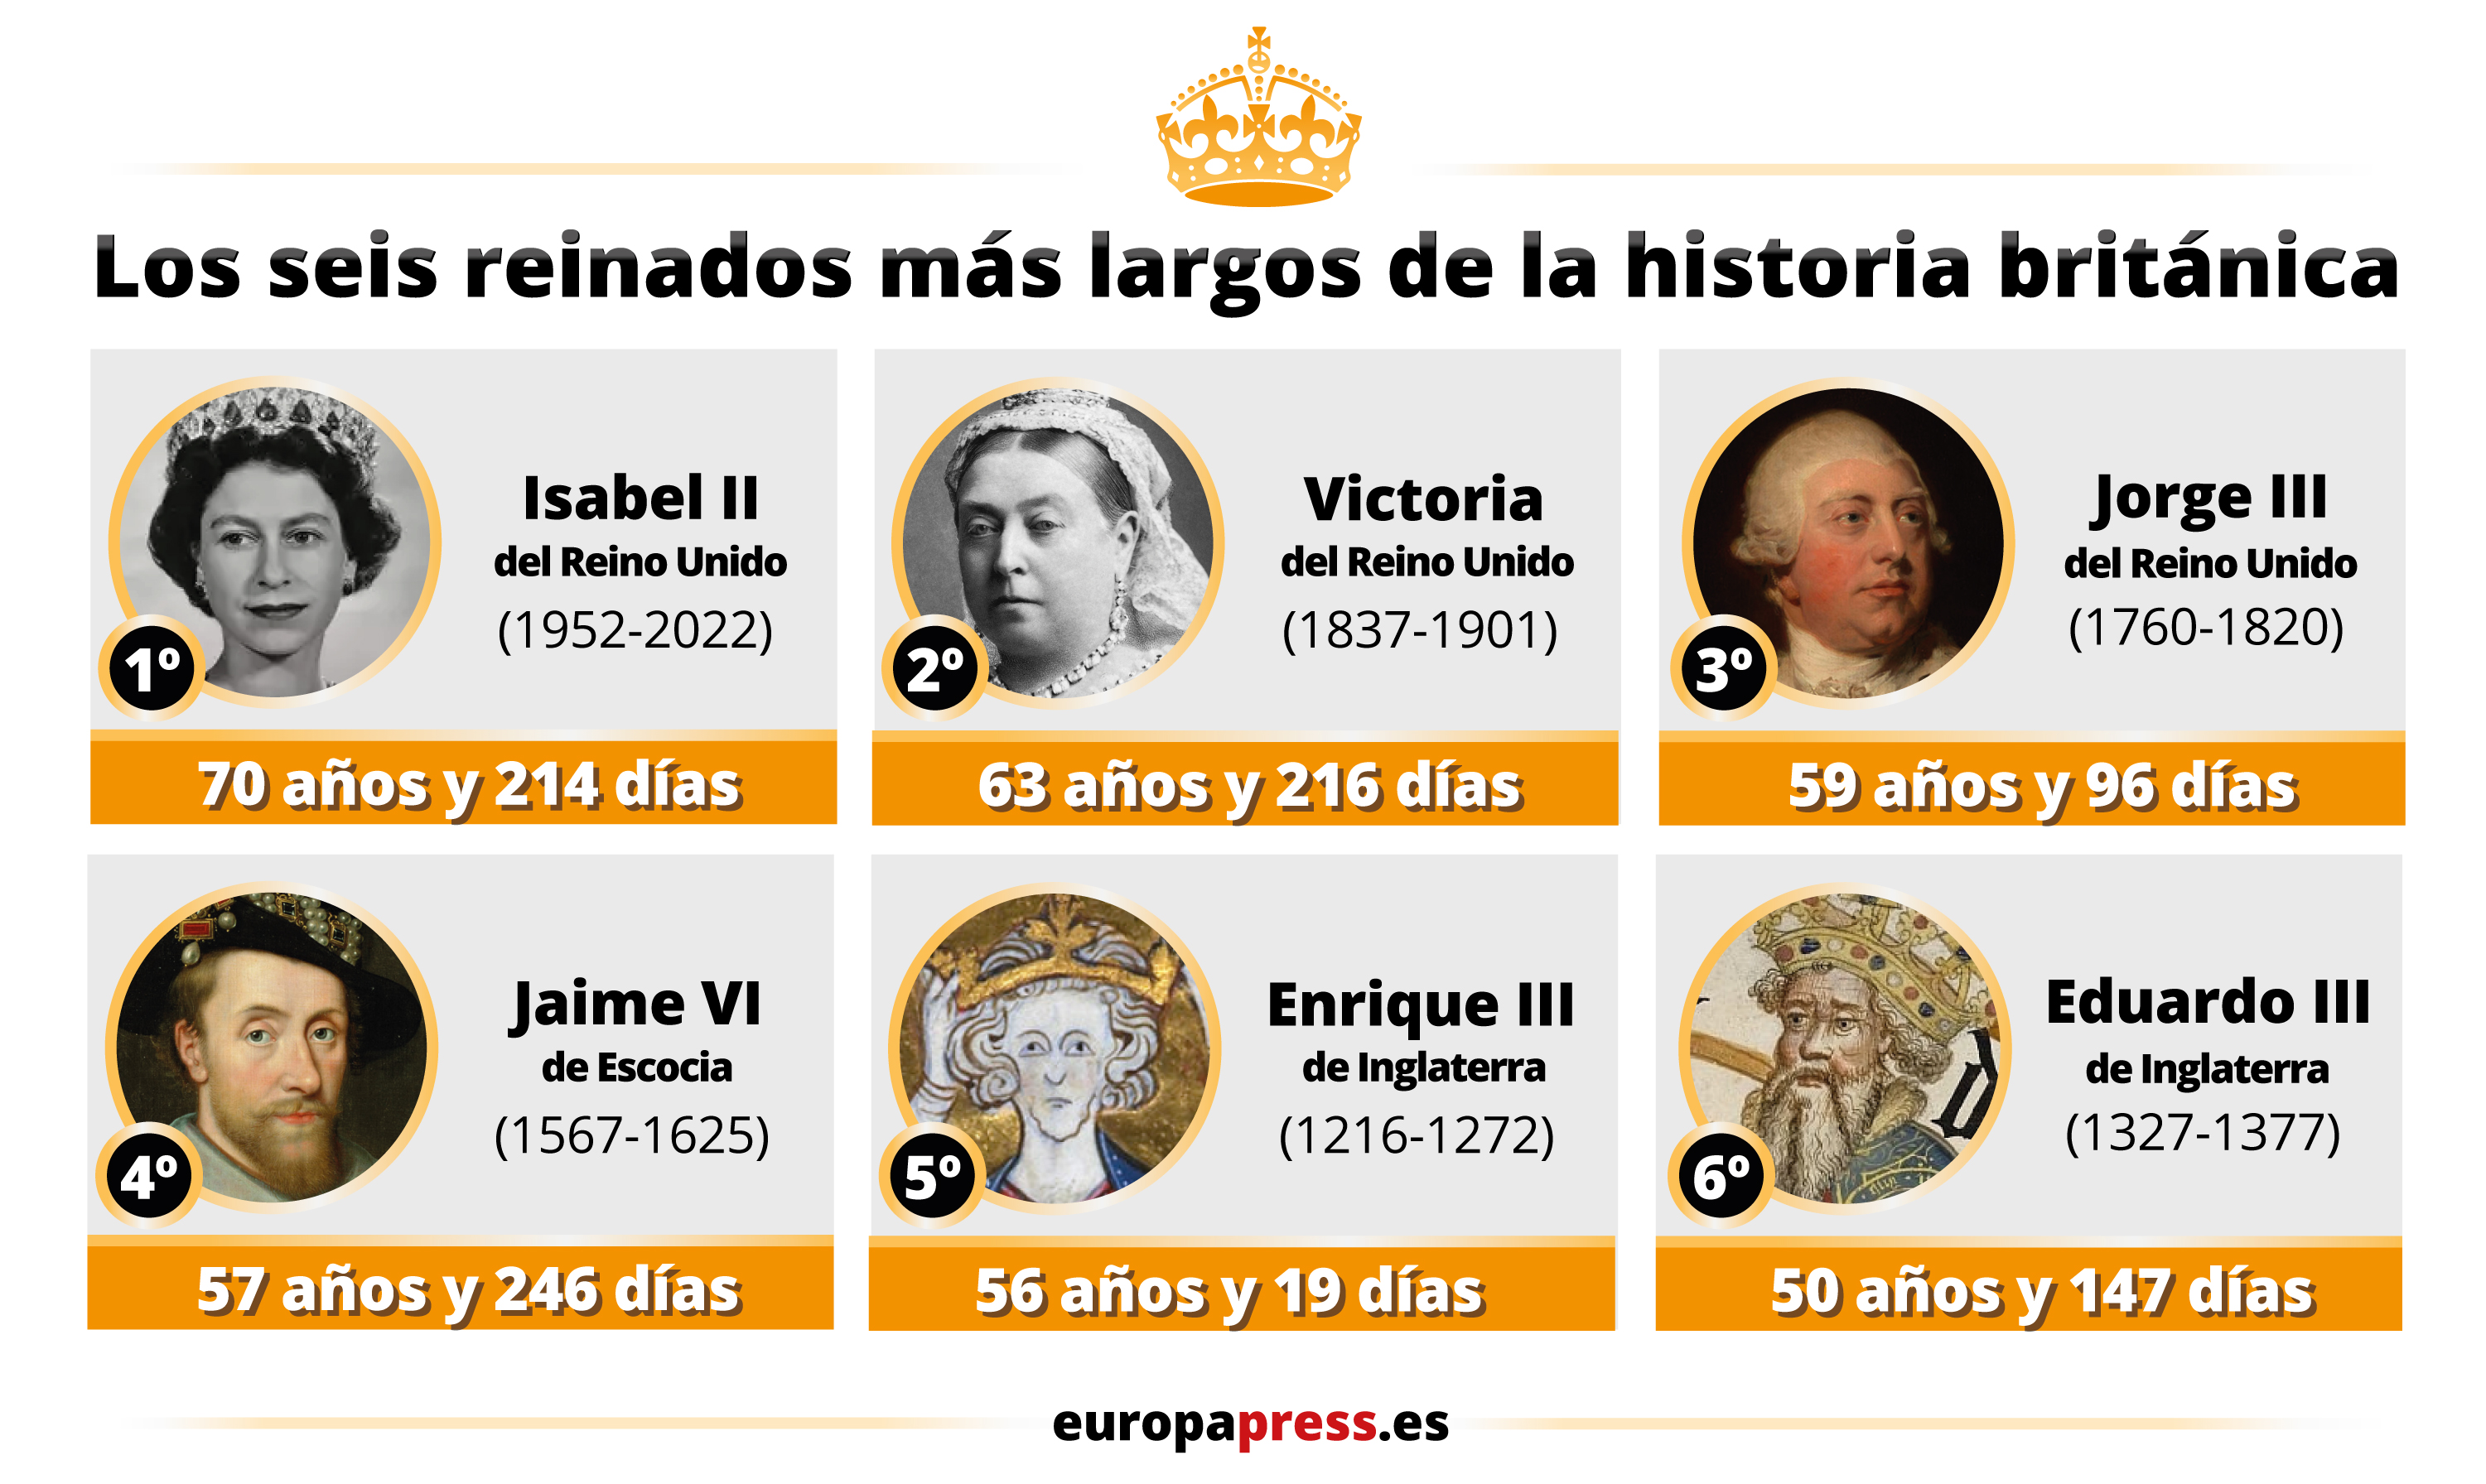 Gráfico que compara el reinado de Isabel II con el de otros monarcas de la historia de Gran Bretaña